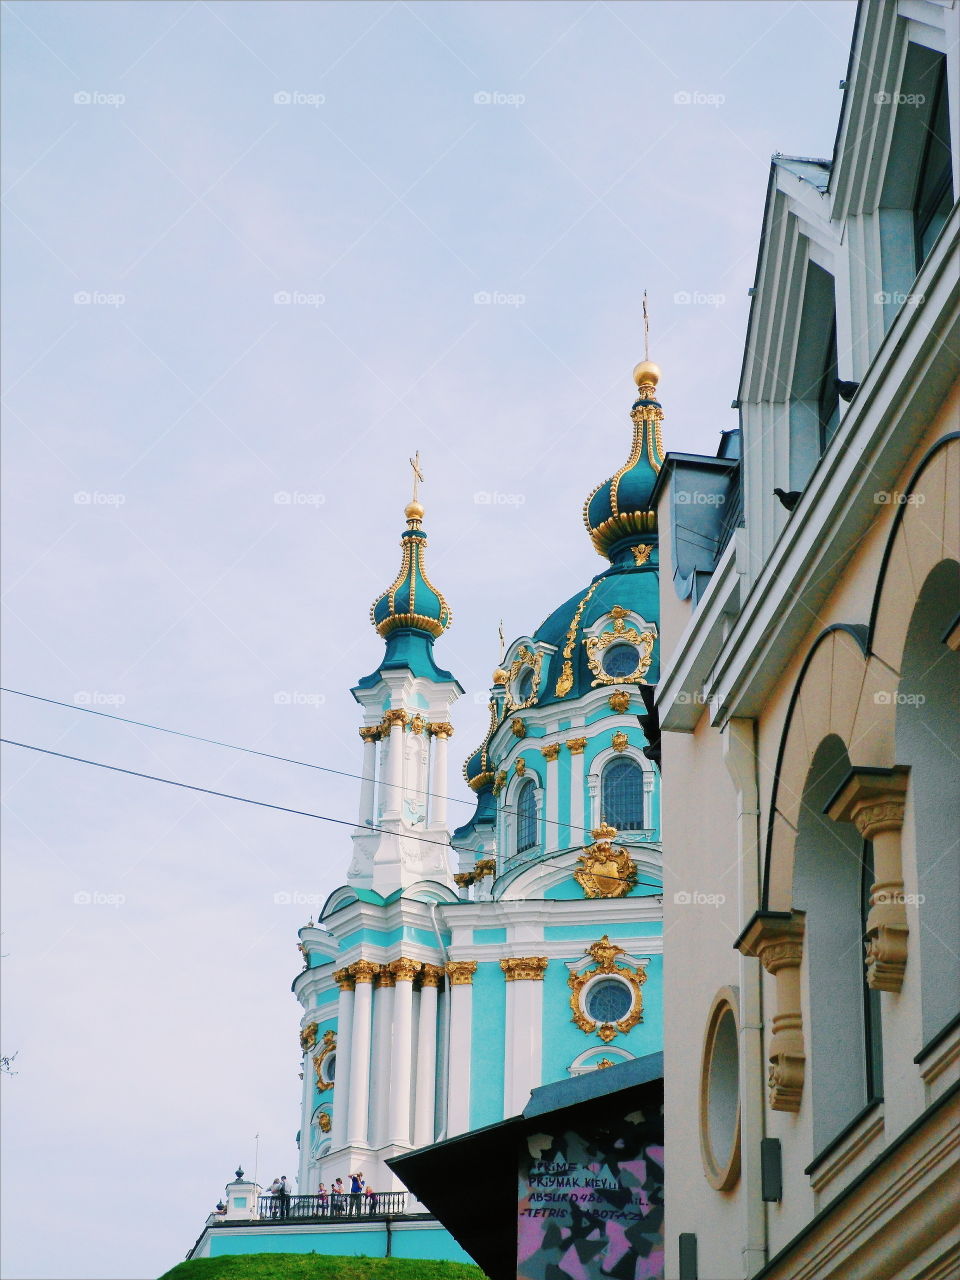 St. Andrew's Church in Kiev